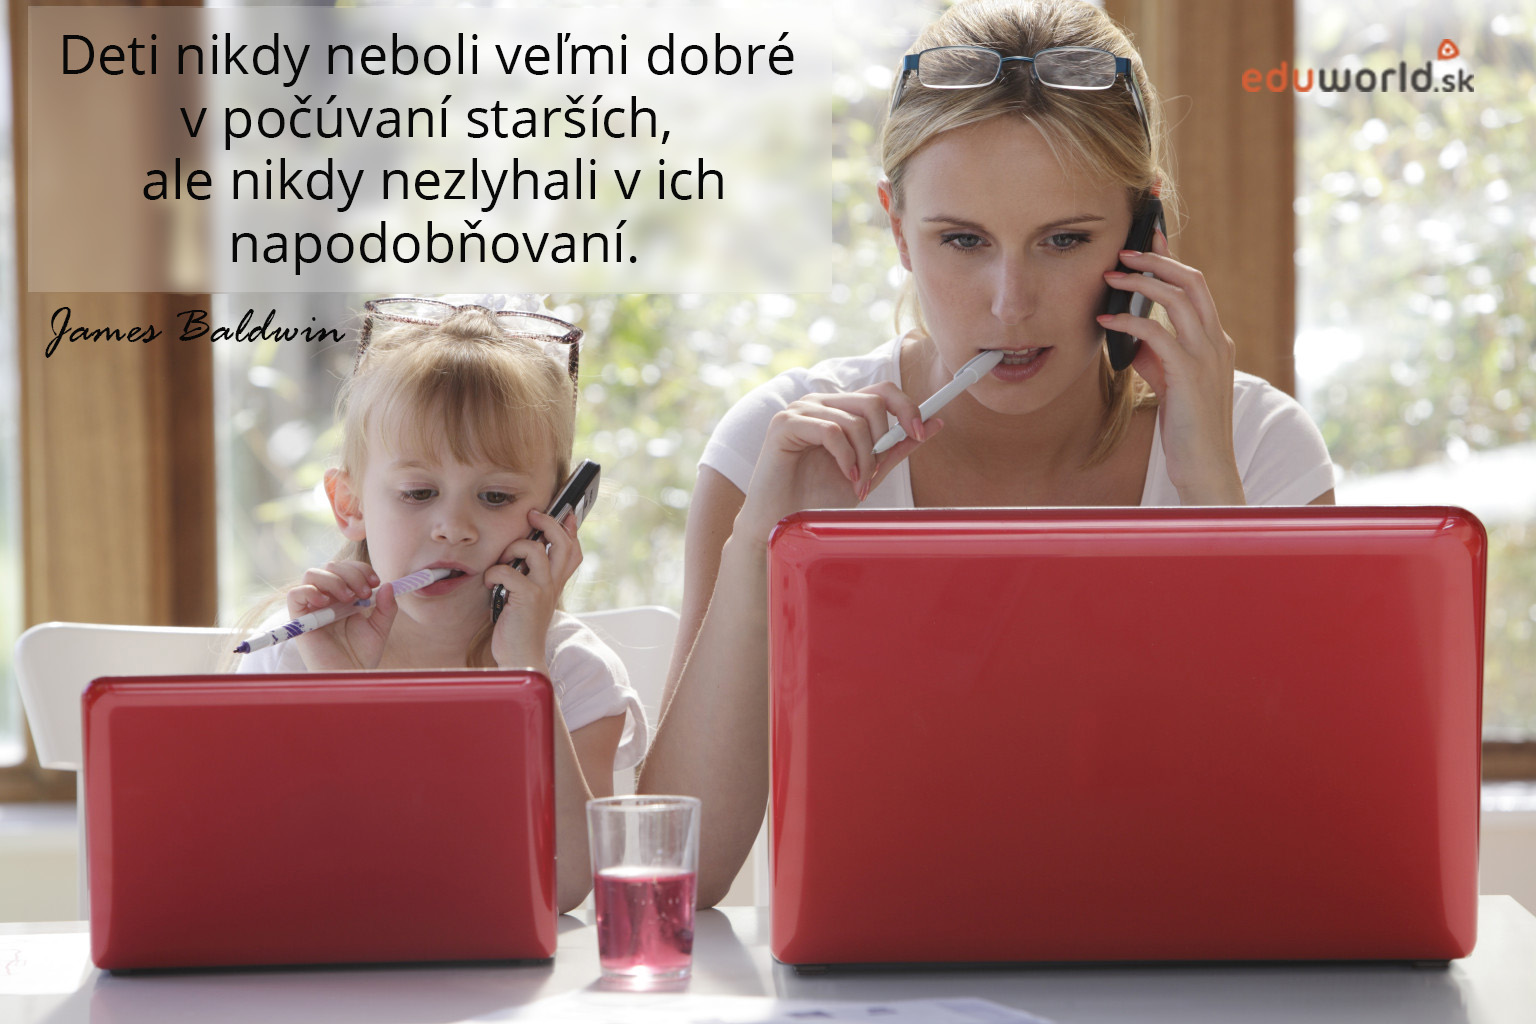 príklad rodičia-eduworld.sk